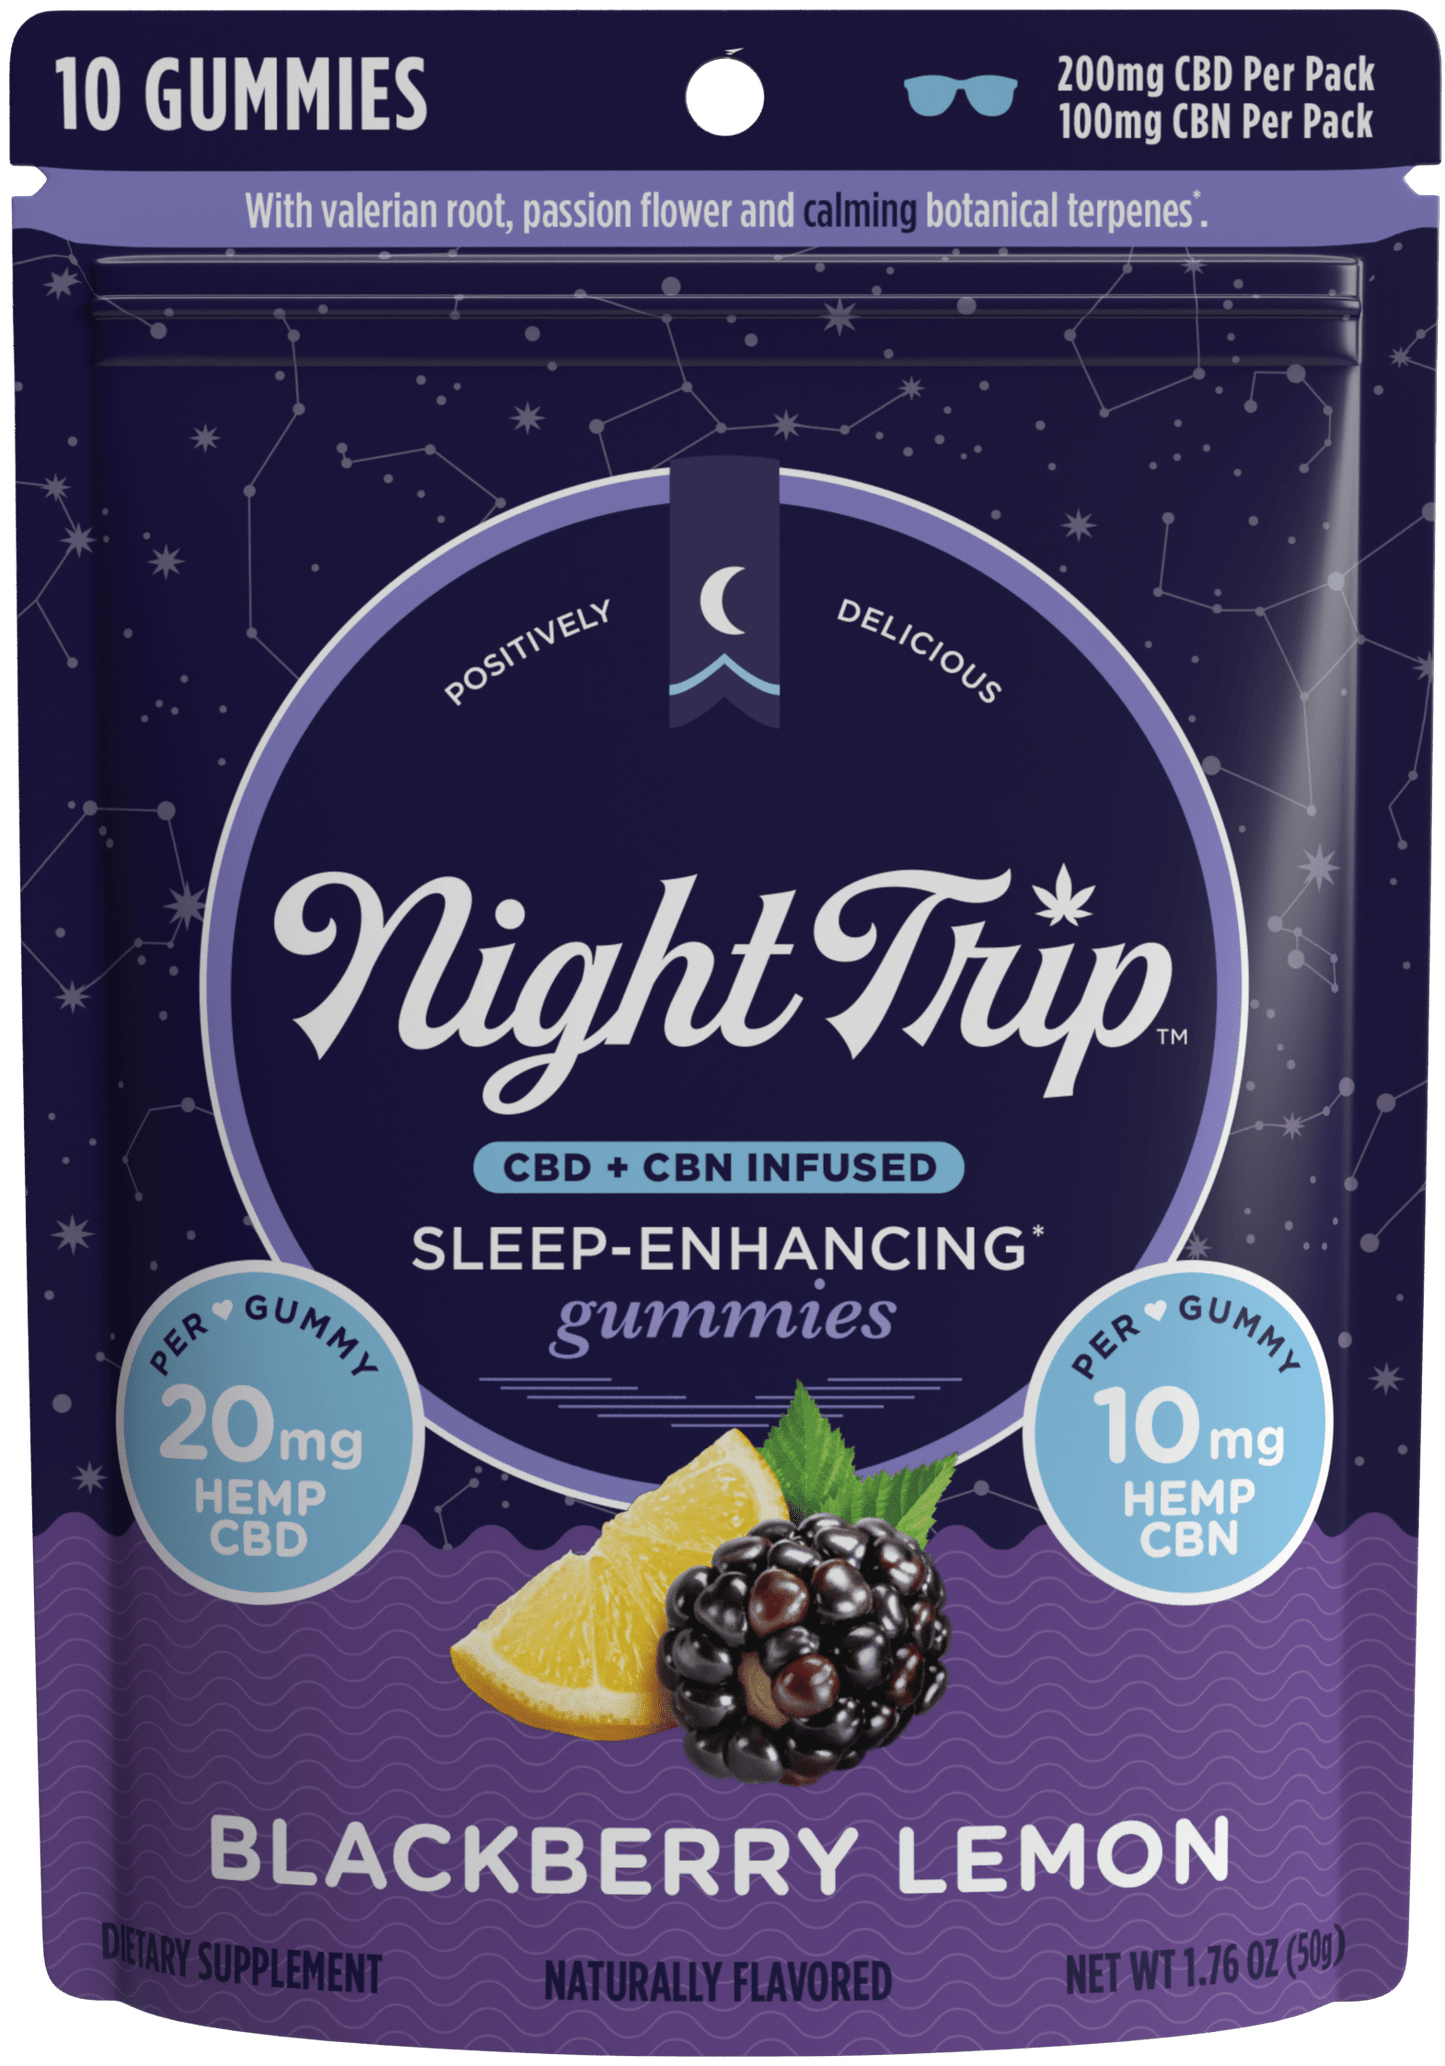 Packaging front render of Night Trip Blackberry lemon CBD + CBN-infused sleep enhancing gummies.